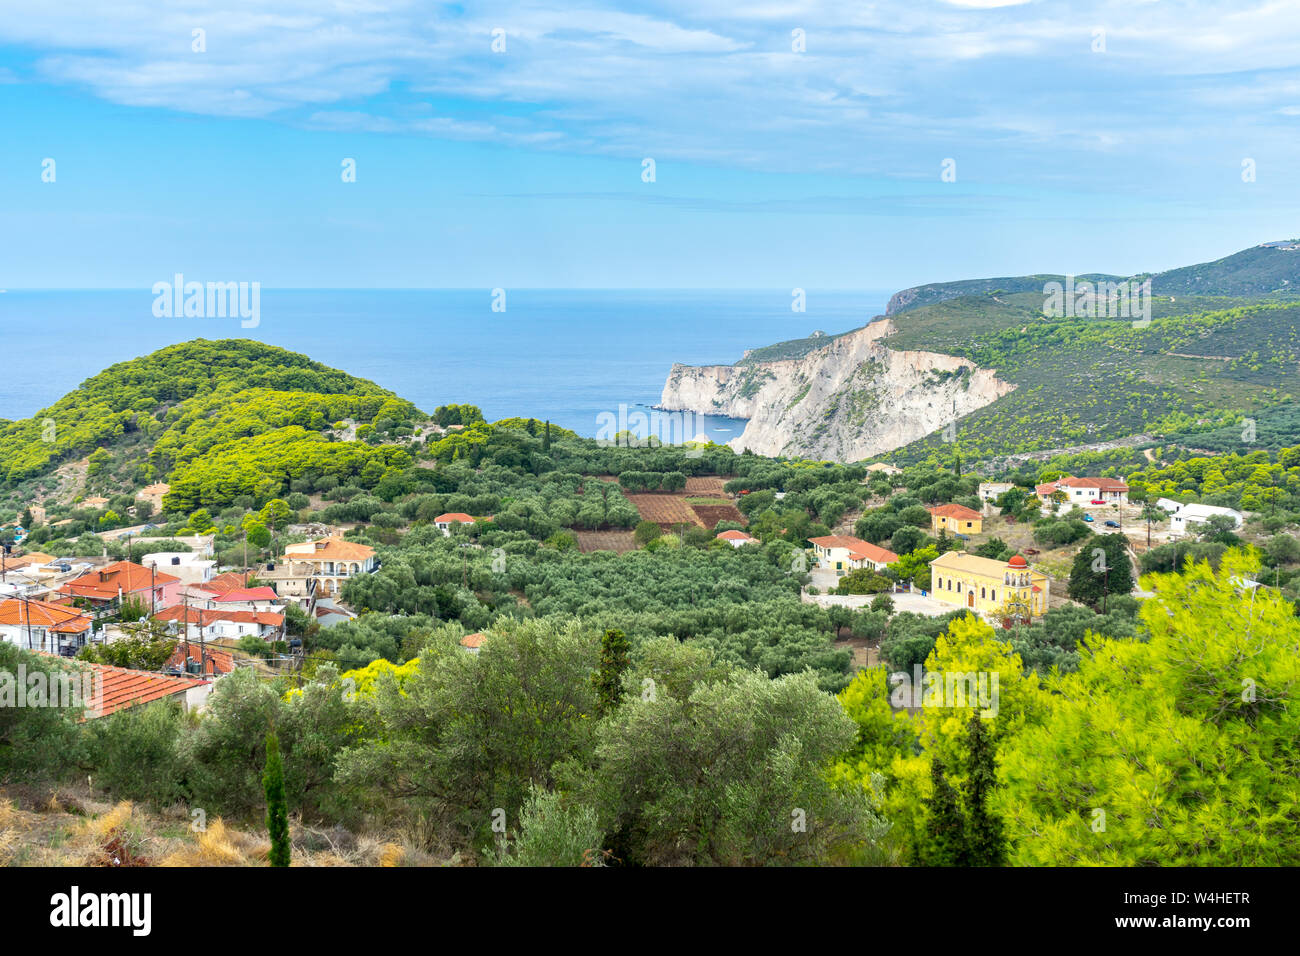 Griechenland, Zakynthos, paradiesischen Landschaft und kleinen Dorf am Urlaubsziel Insel Stockfoto